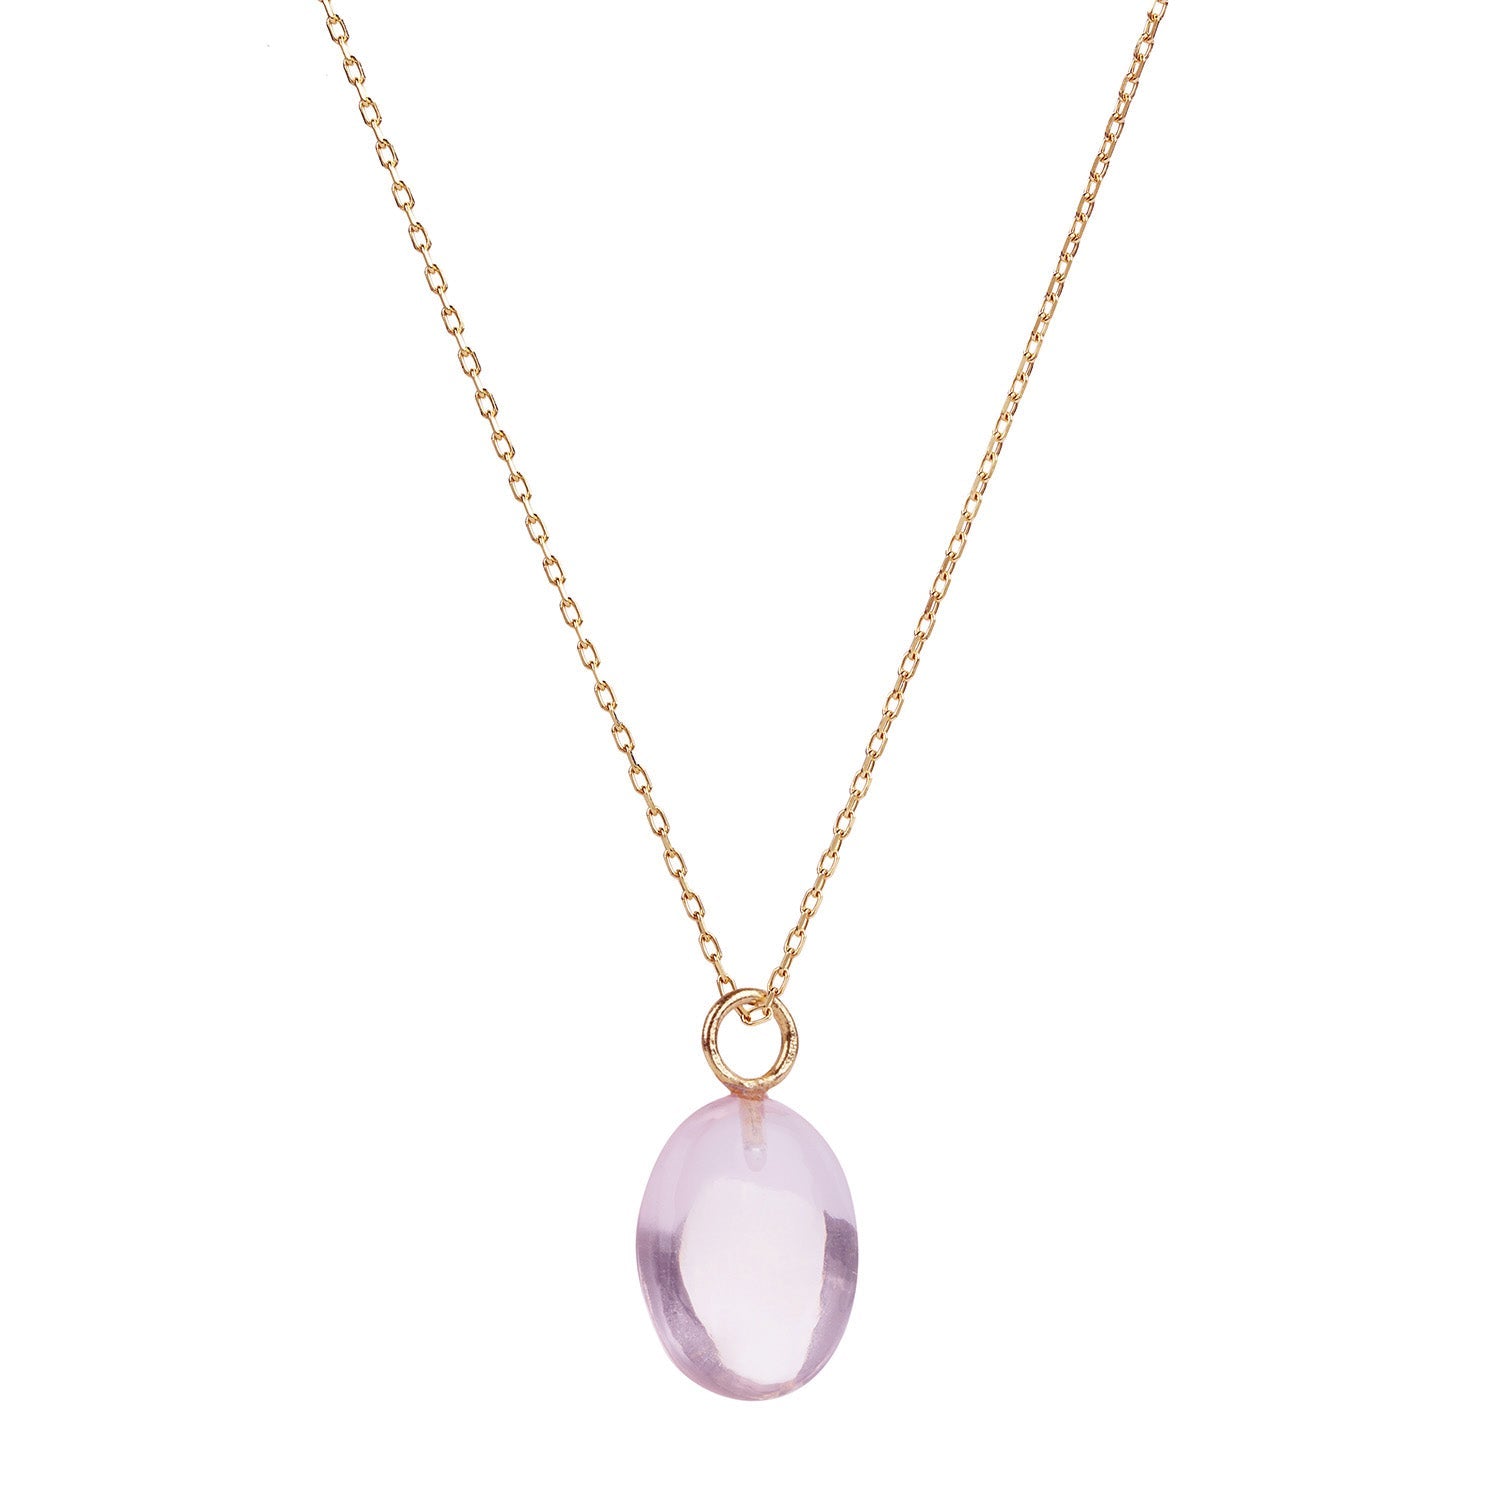 Eden Gold Chain Necklace with Pink Quartz Pendant